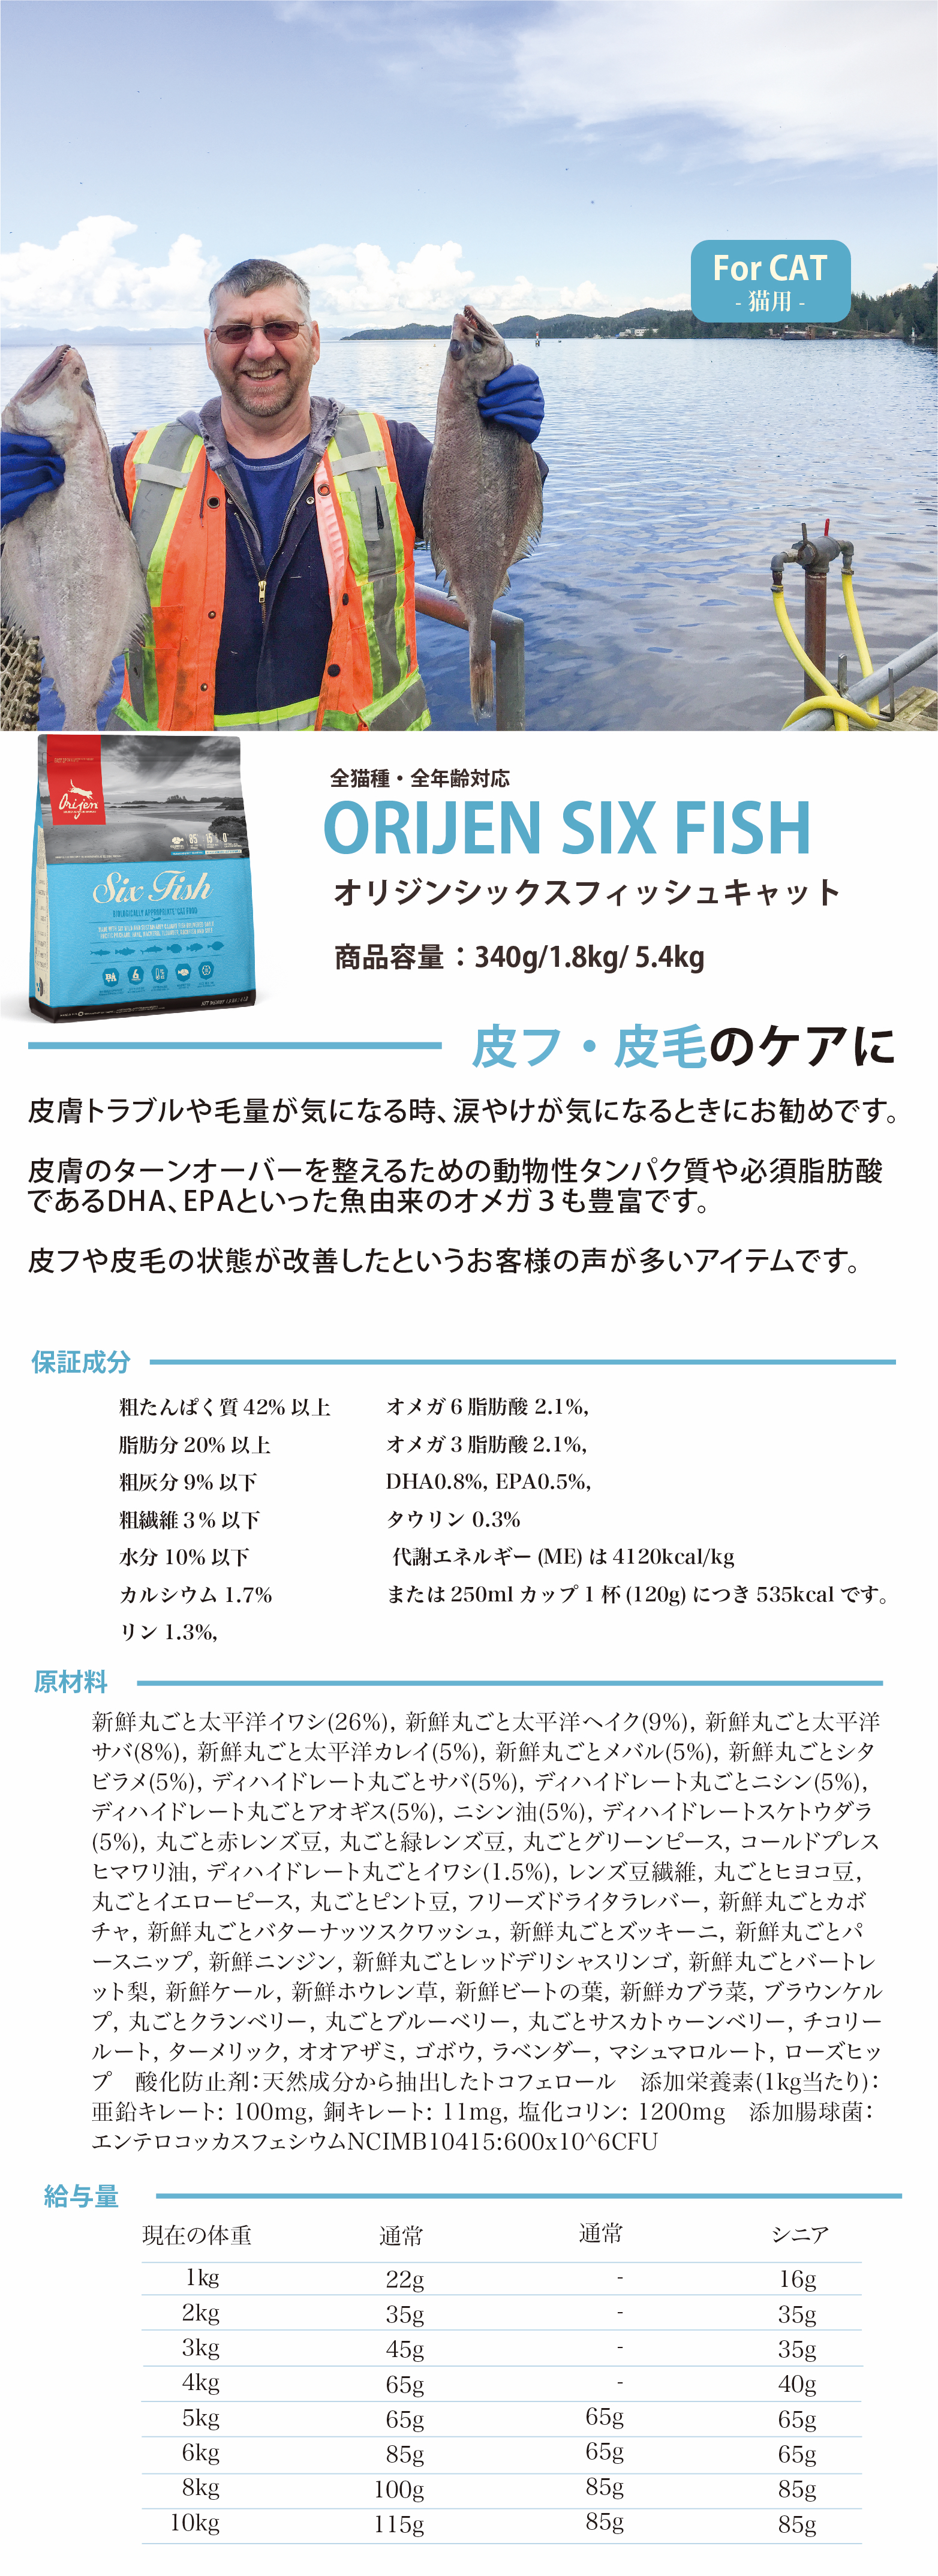 sixfish商品情報